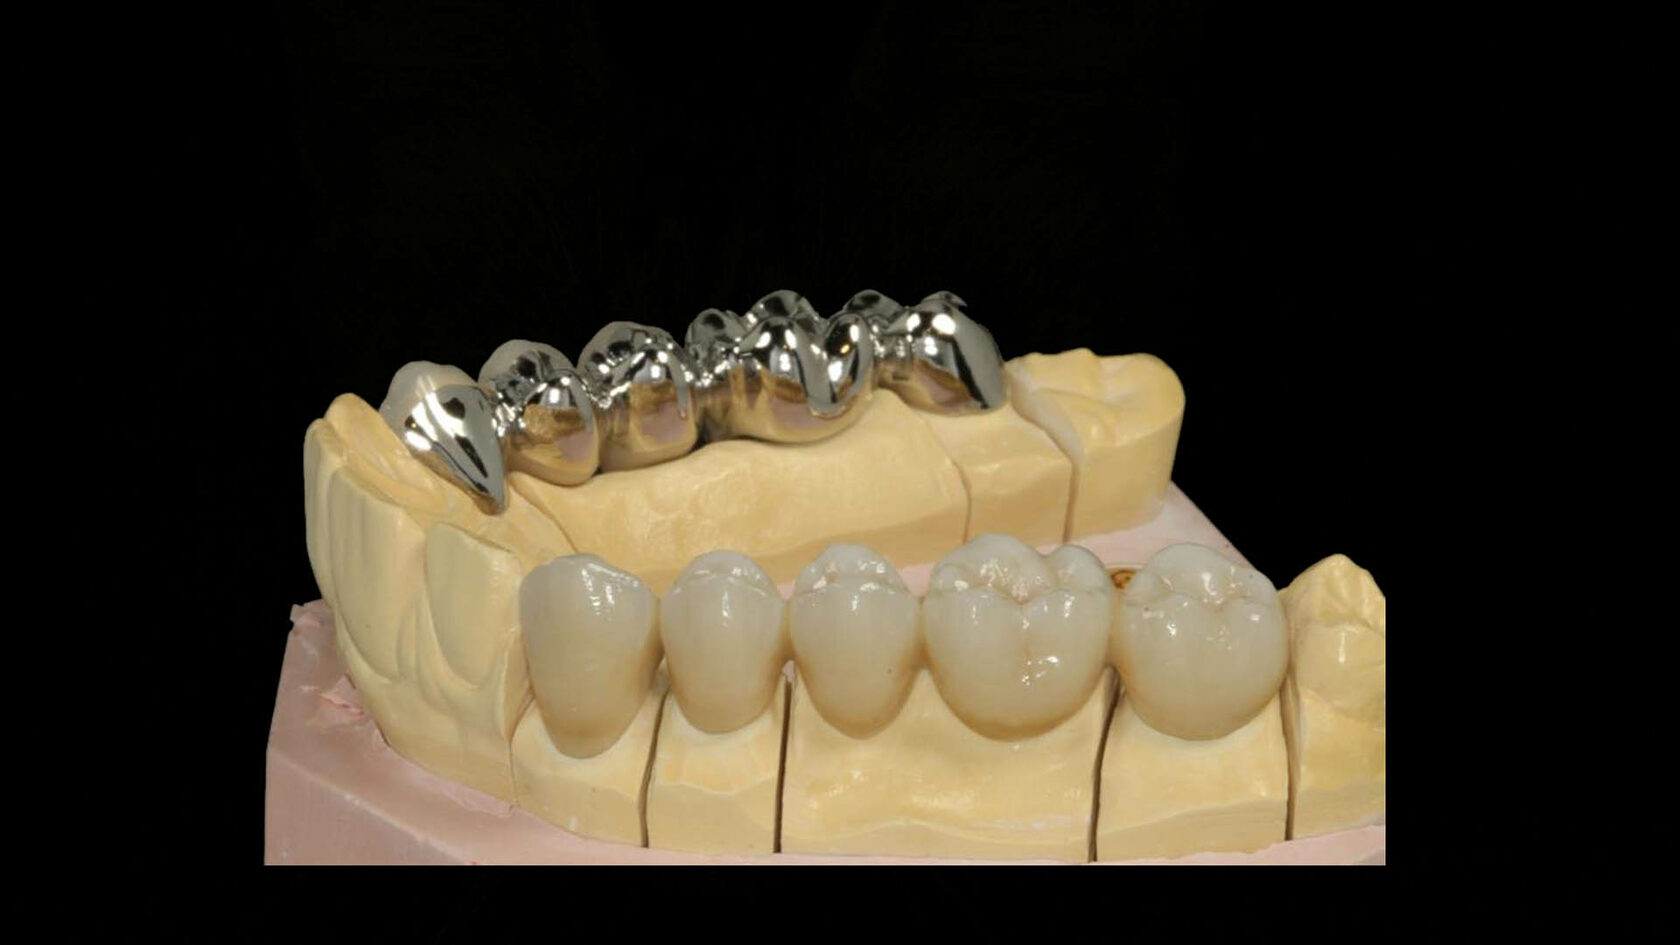 керамические мосты для зубов